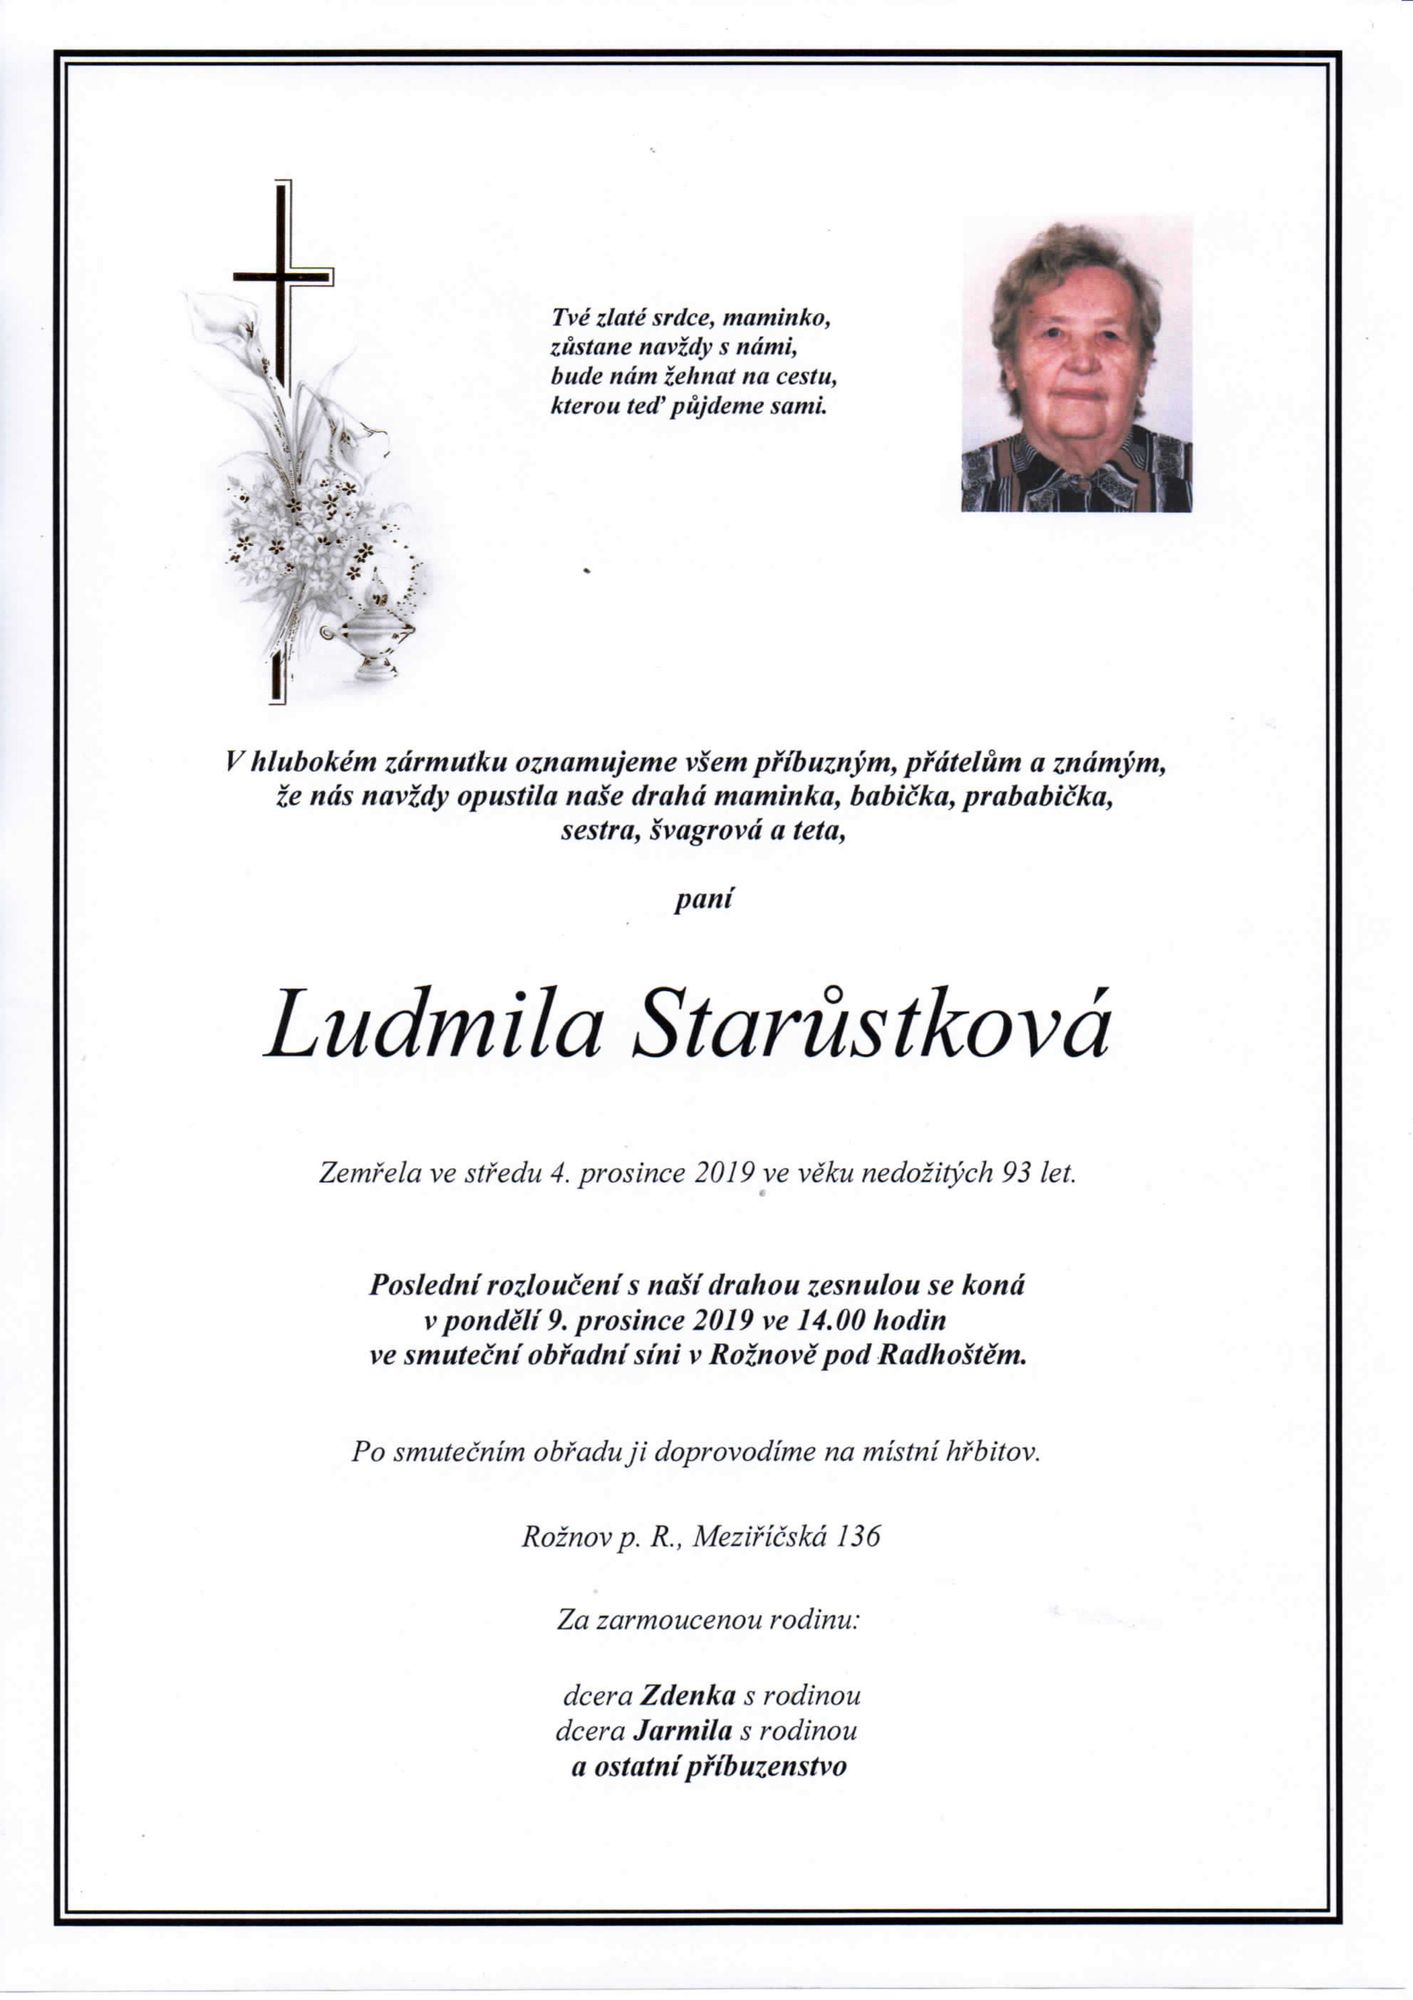 Ludmila Starůstková